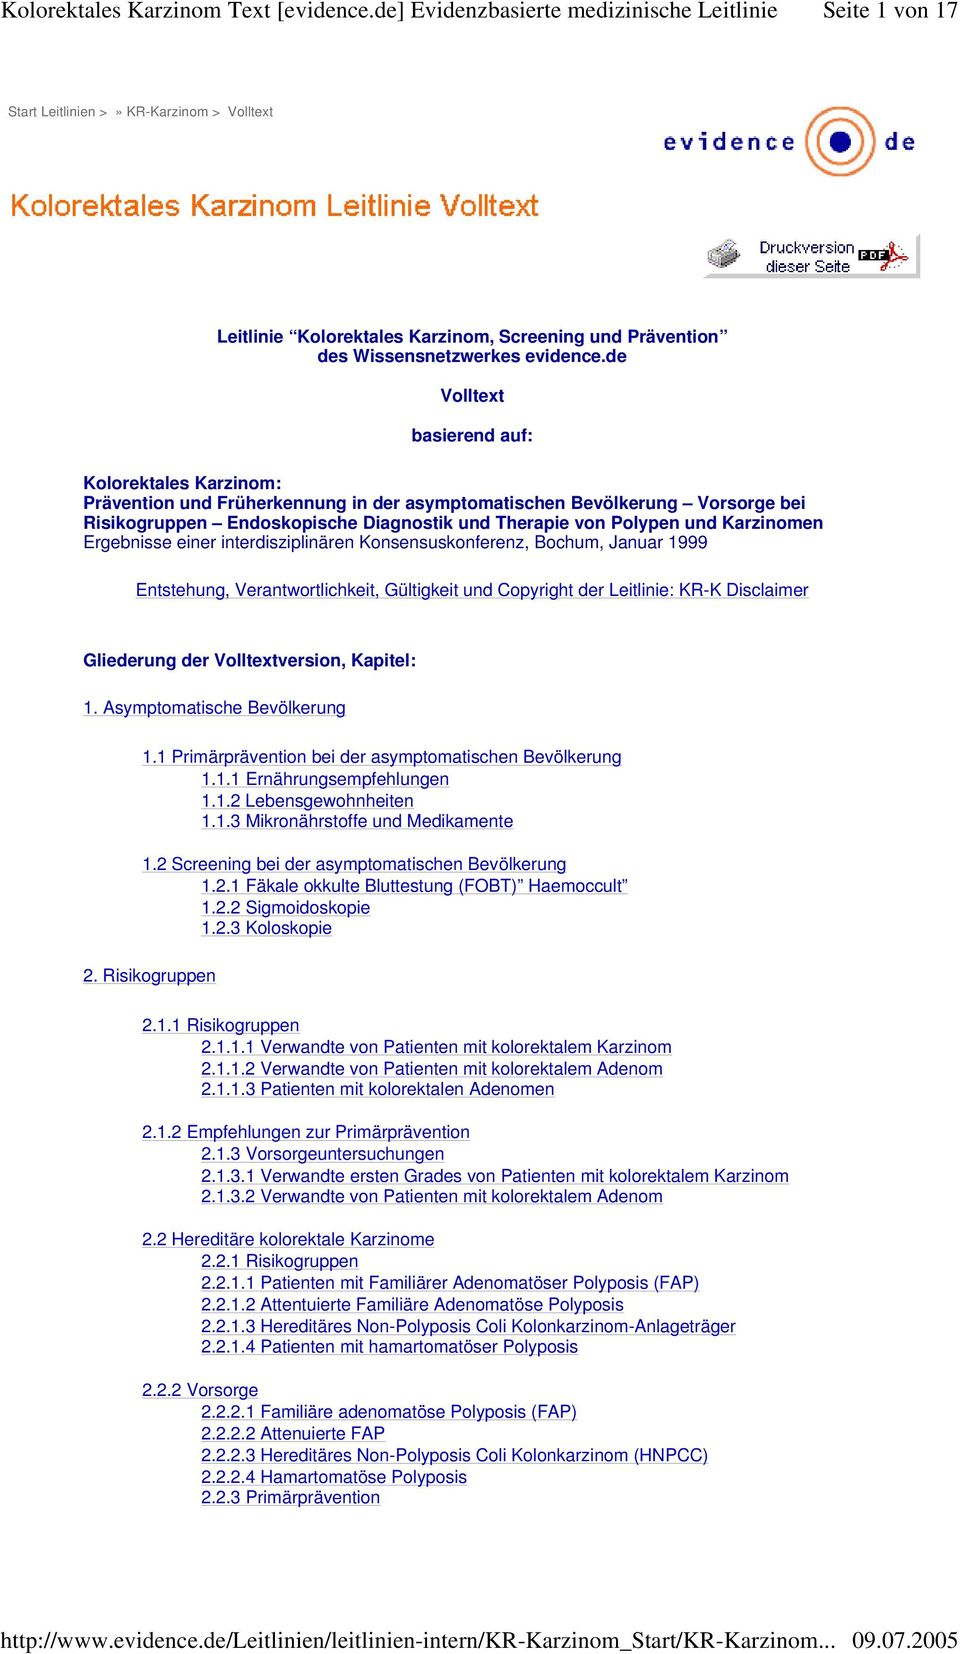 Karzinomen Ergebnisse einer interdisziplinären Konsensuskonferenz, Bochum, Januar 1999 Entstehung, Verantwortlichkeit, Gültigkeit und Copyright der Leitlinie: KR-K Disclaimer Gliederung der